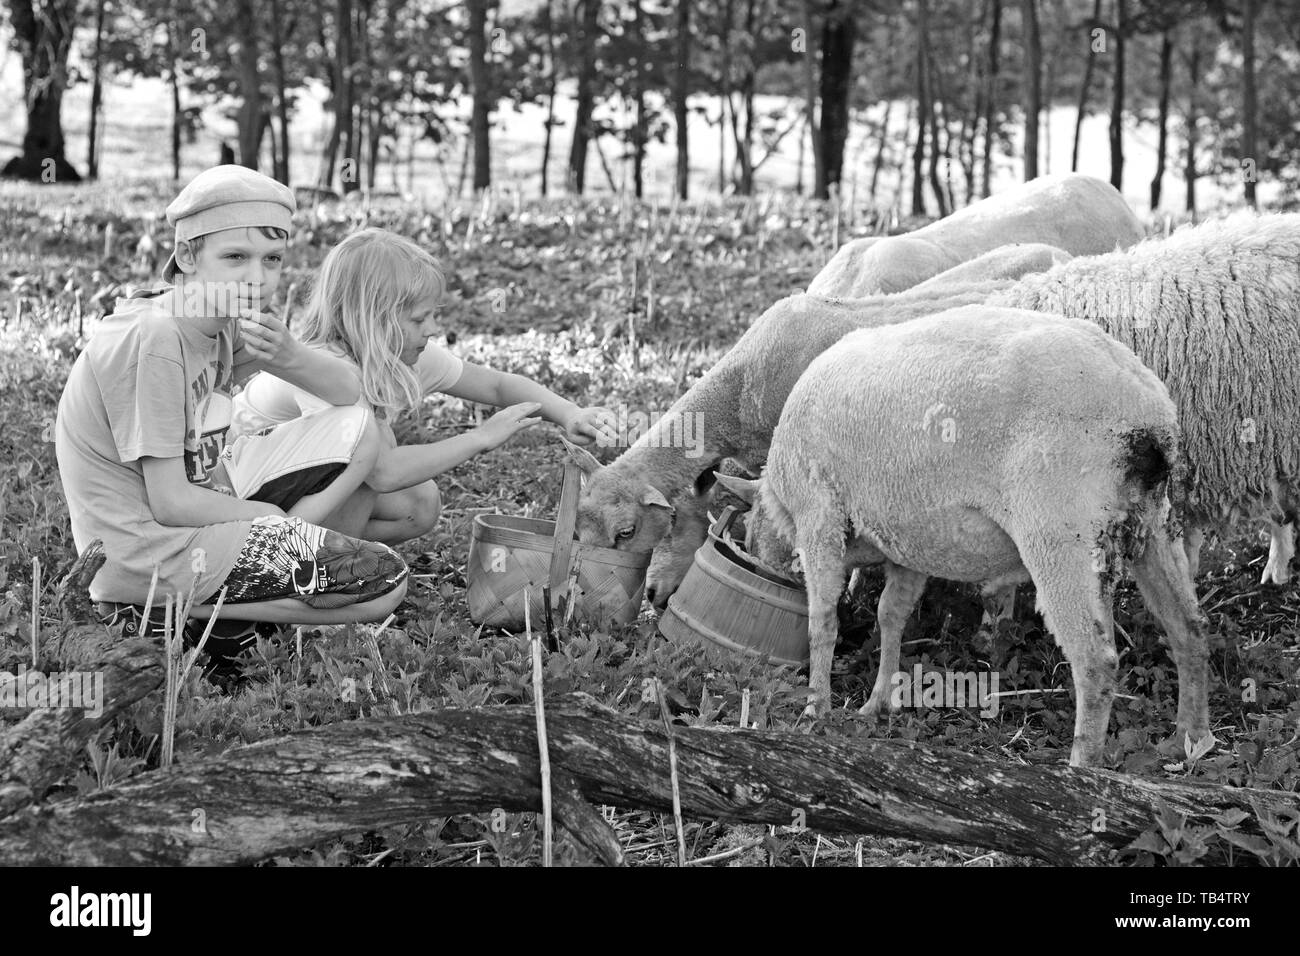 Un garçon et une fille feeding sheep Banque D'Images